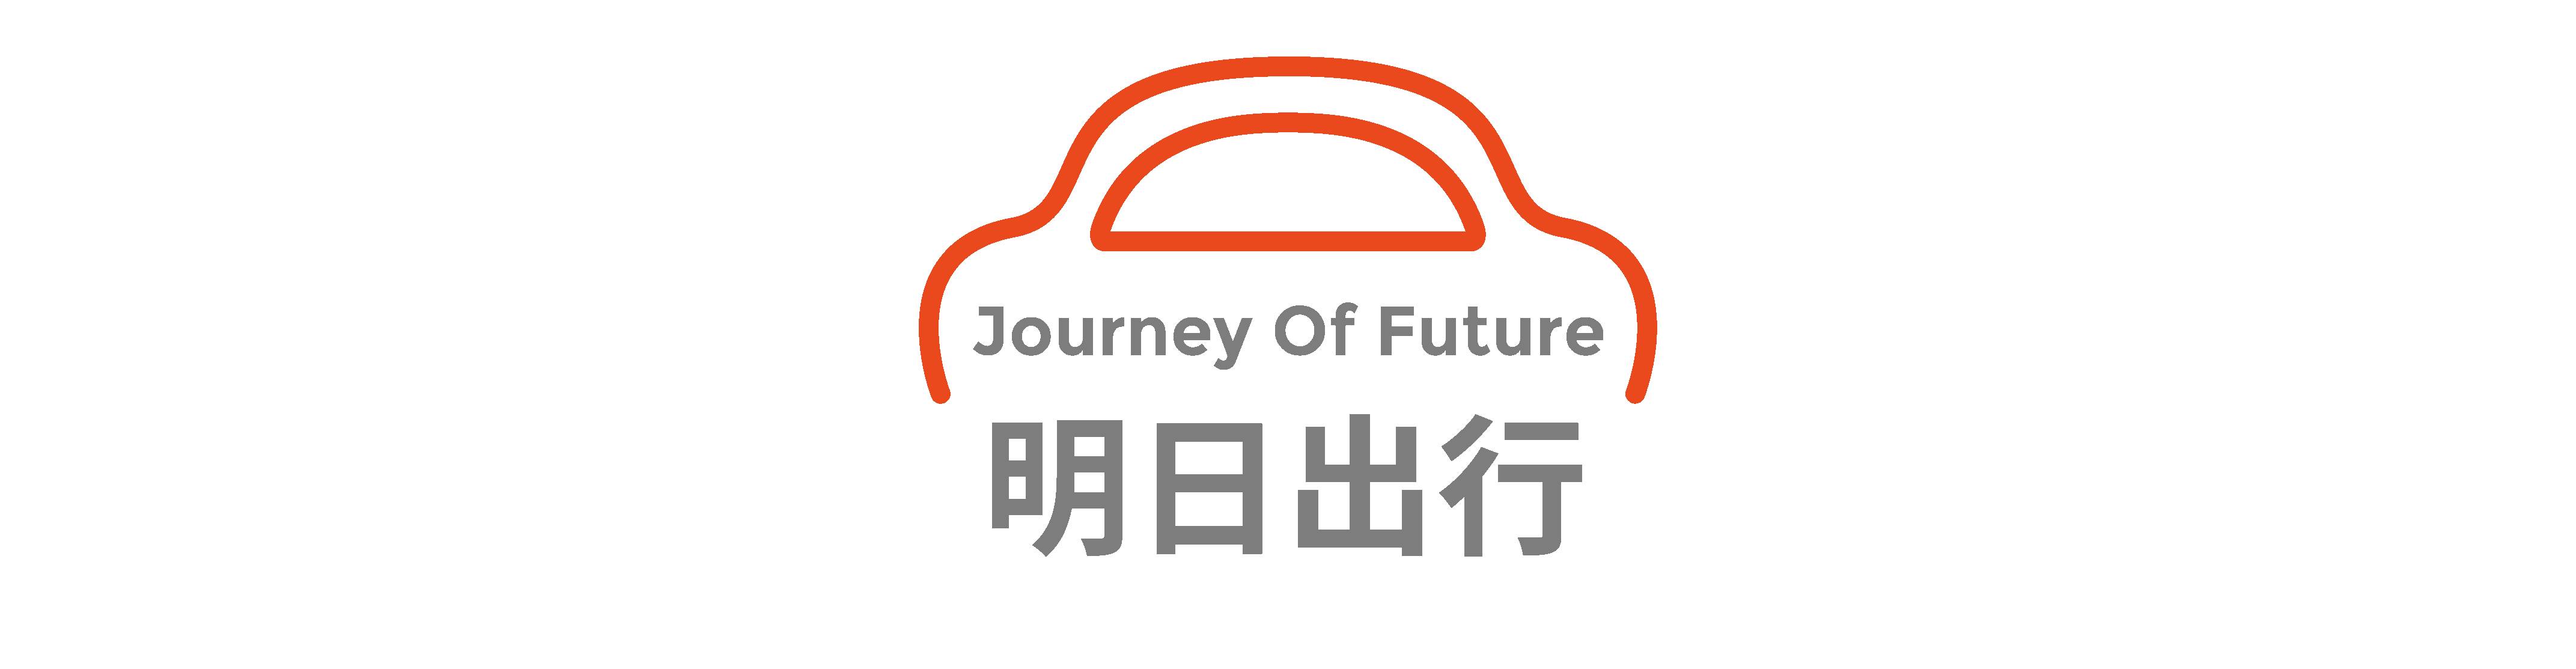 Dong Che Daily Tesla veröffentlicht das vollautomatisierte Fahrsystem Beta 9.0 / Audis Projekt für autonomes Fahren wird 2025 in Serie gehen / Xiaomi beschleunigt den Prozess der Autoherstellung - 4 2